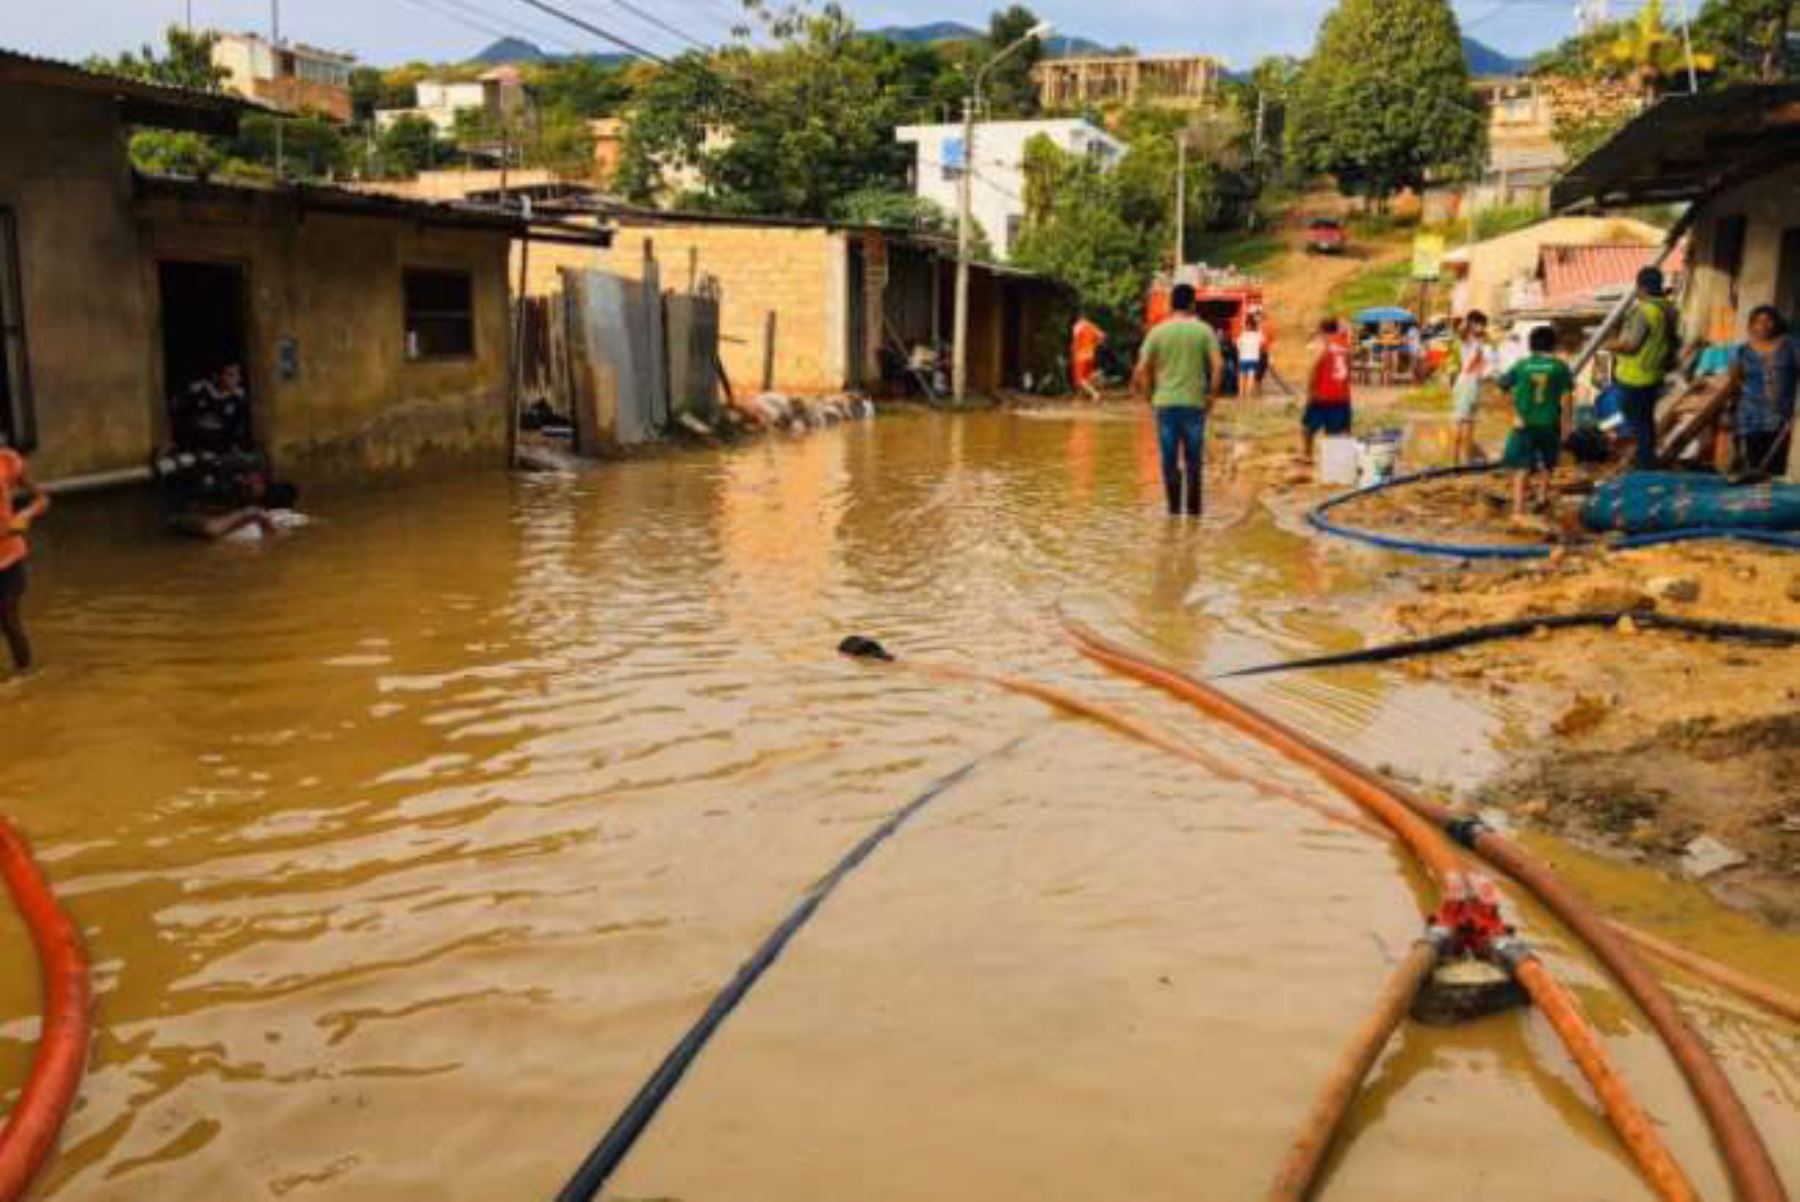 Lluvias intensas en Tarapoto dejan 3 heridos, 59 familias damnificadas y 111 familias afectadas; además de cuantiosos daños materiales. ANDINA/Difusión